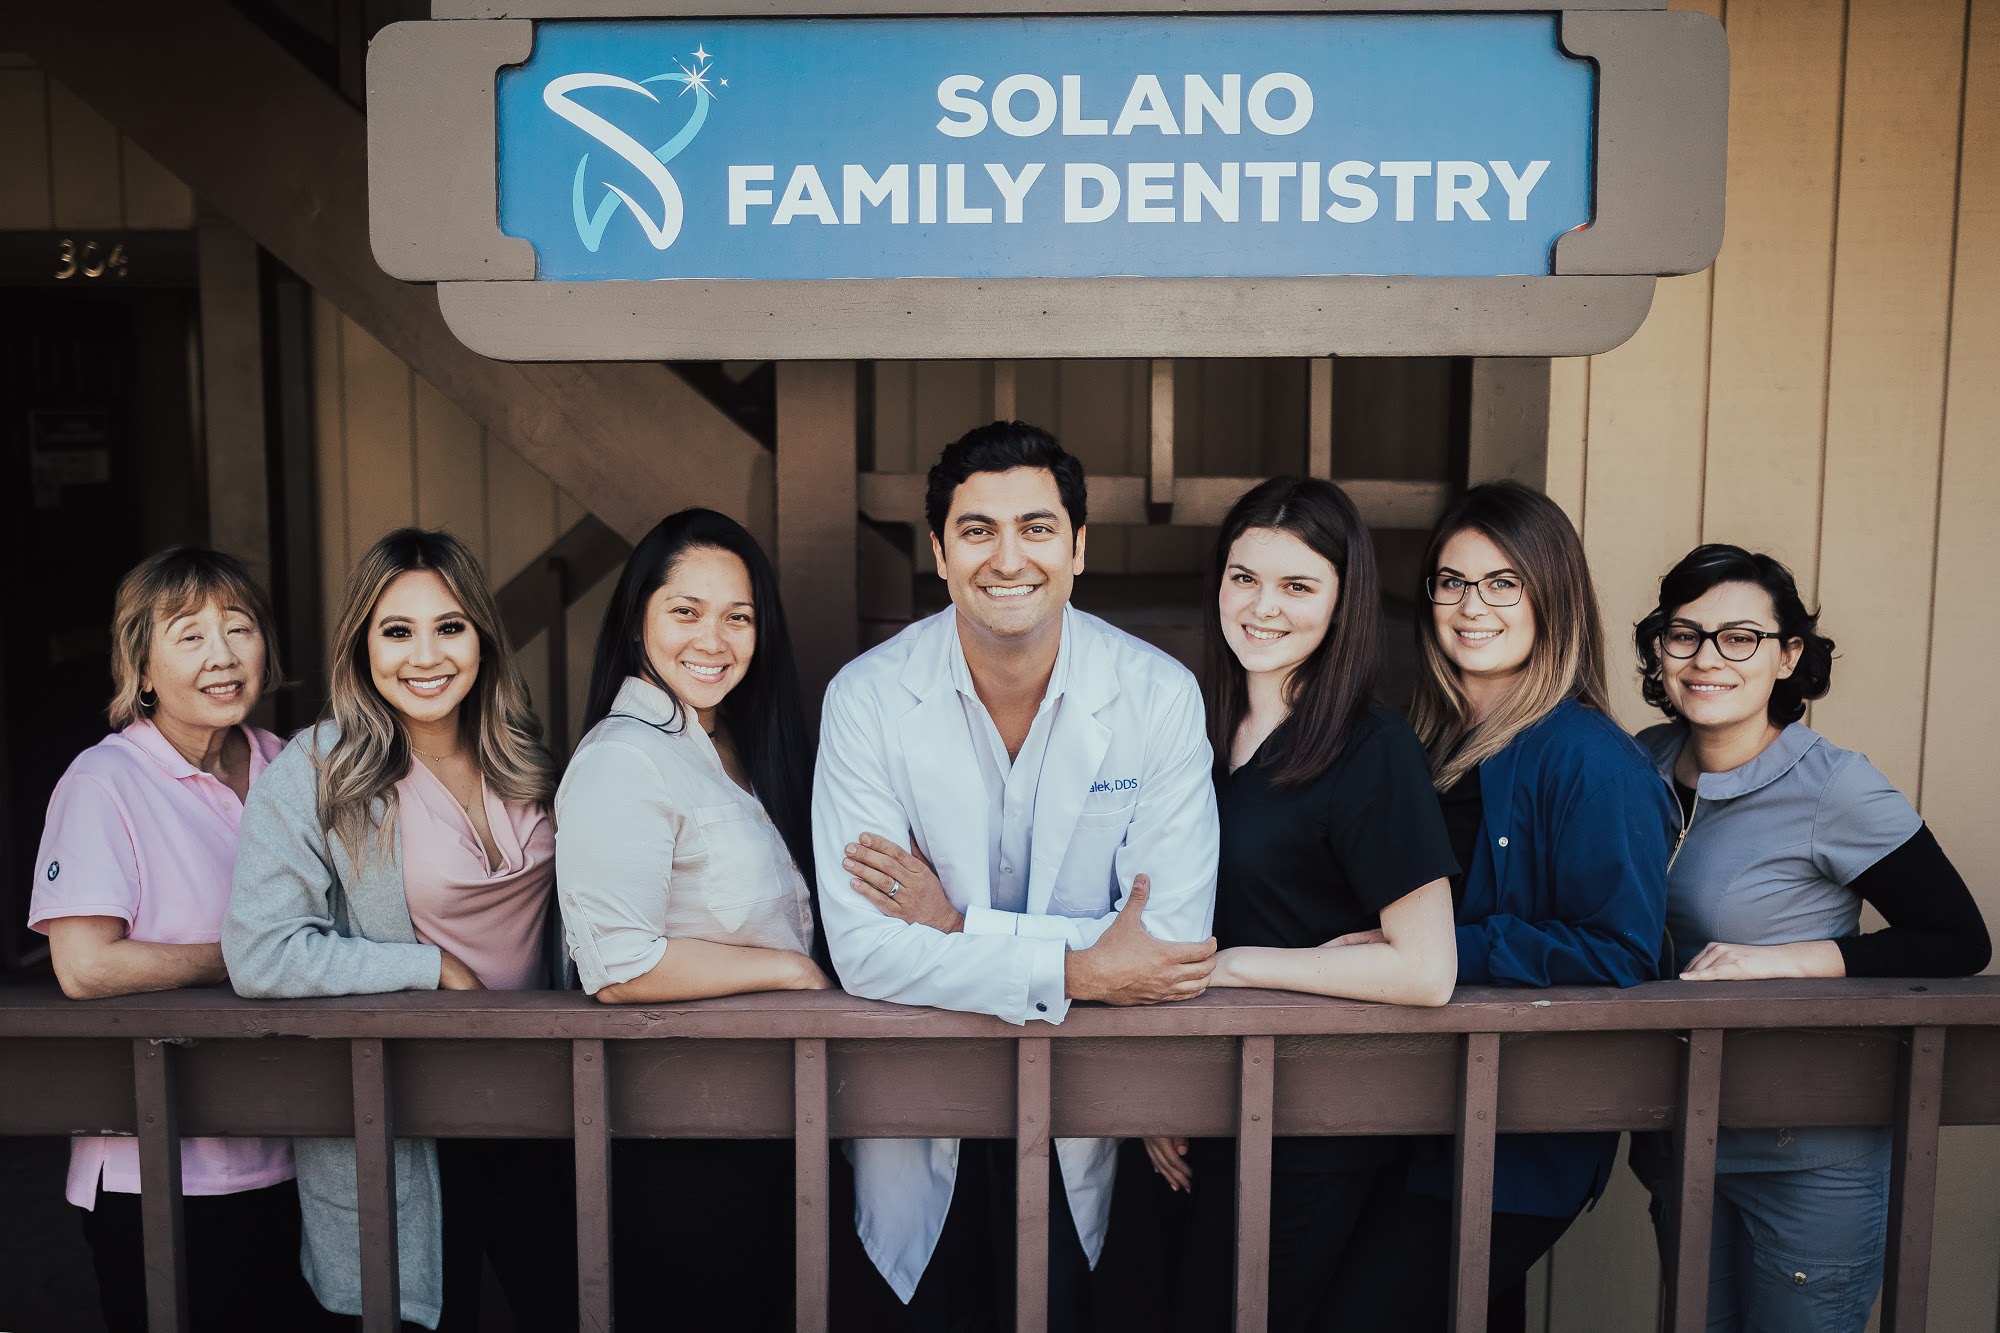 Solano Family Dentistry